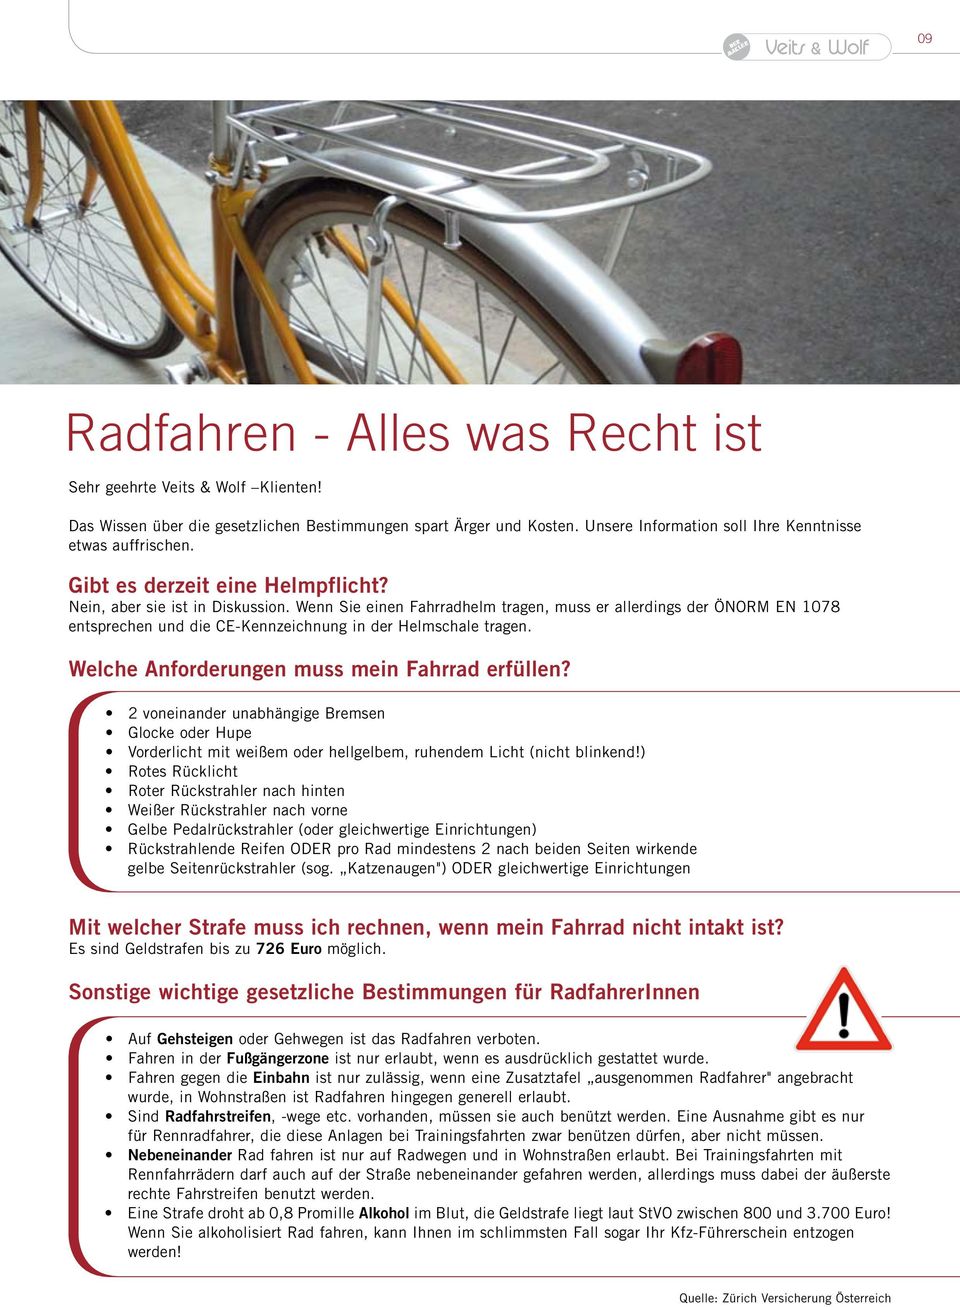 Wenn Sie einen Fahrradhelm tragen, muss er allerdings der ÖNORM EN 1078 entsprechen und die CE-Kennzeichnung in der Helmschale tragen. Welche Anforderungen muss mein Fahrrad erfüllen?